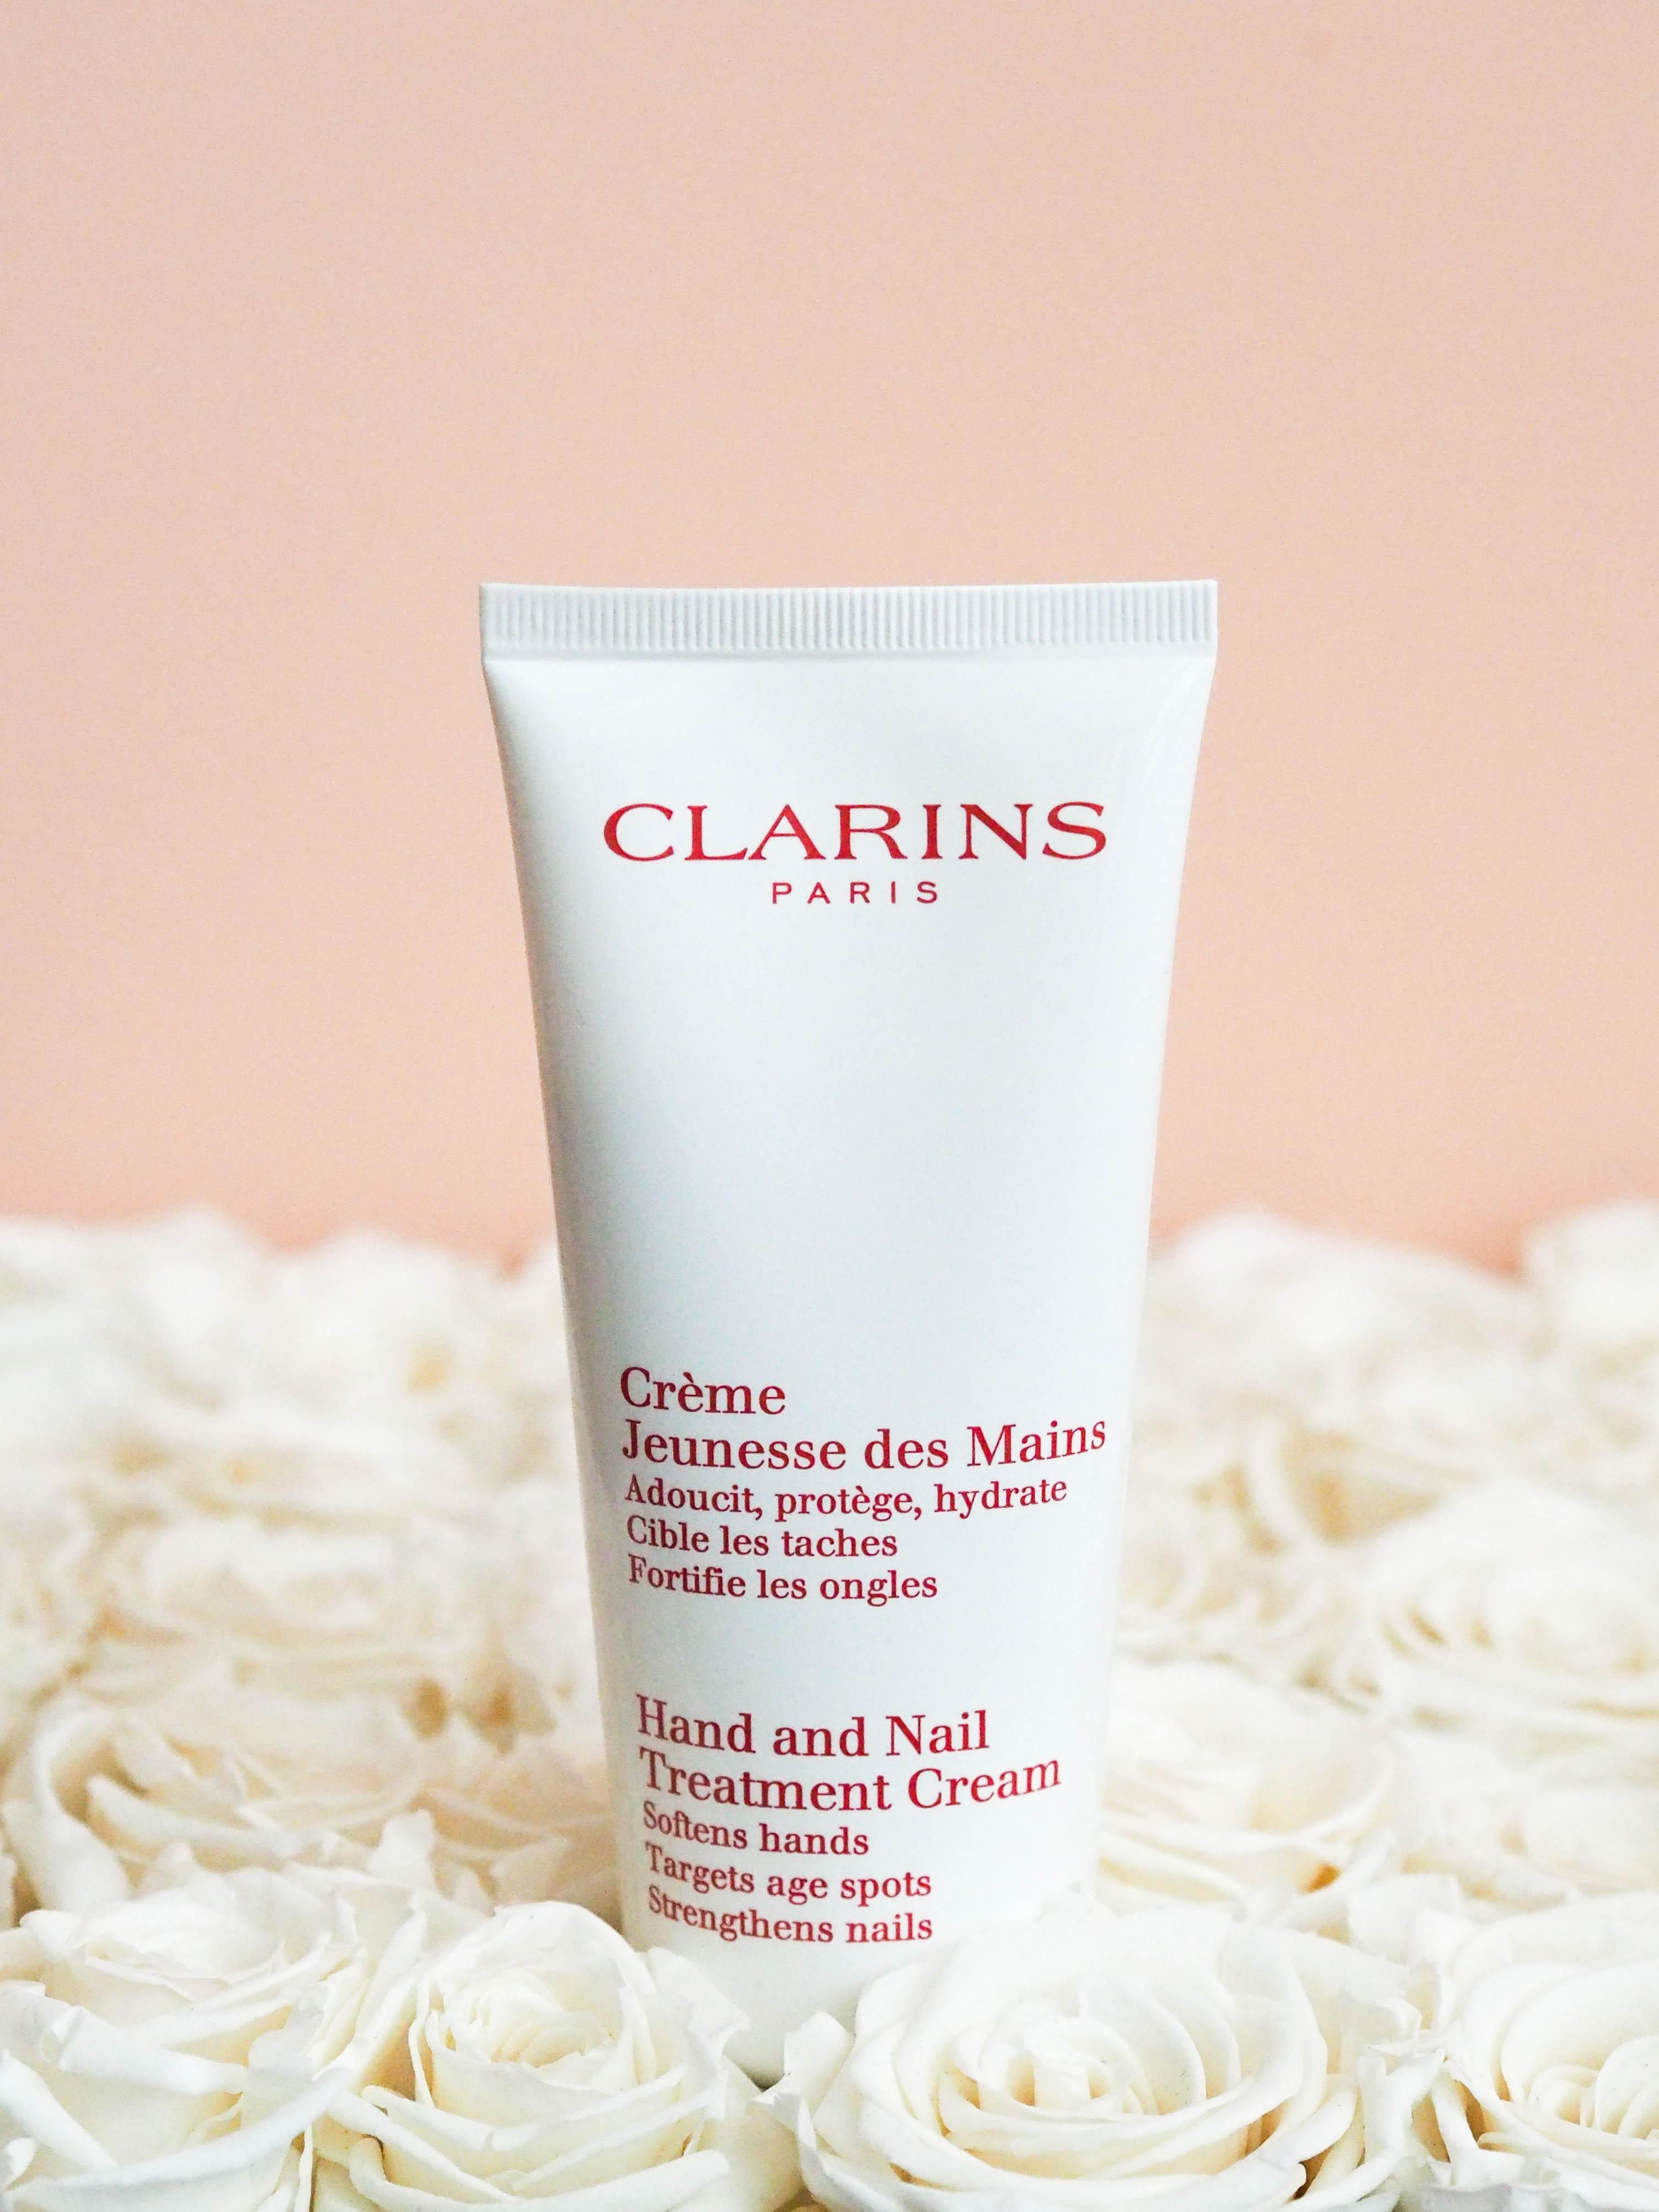 Liebesbeweis in Tubenform von Clarins: Wir verschenken geschmeidige Haut und starke Nägel #beautylieblinge #clarins